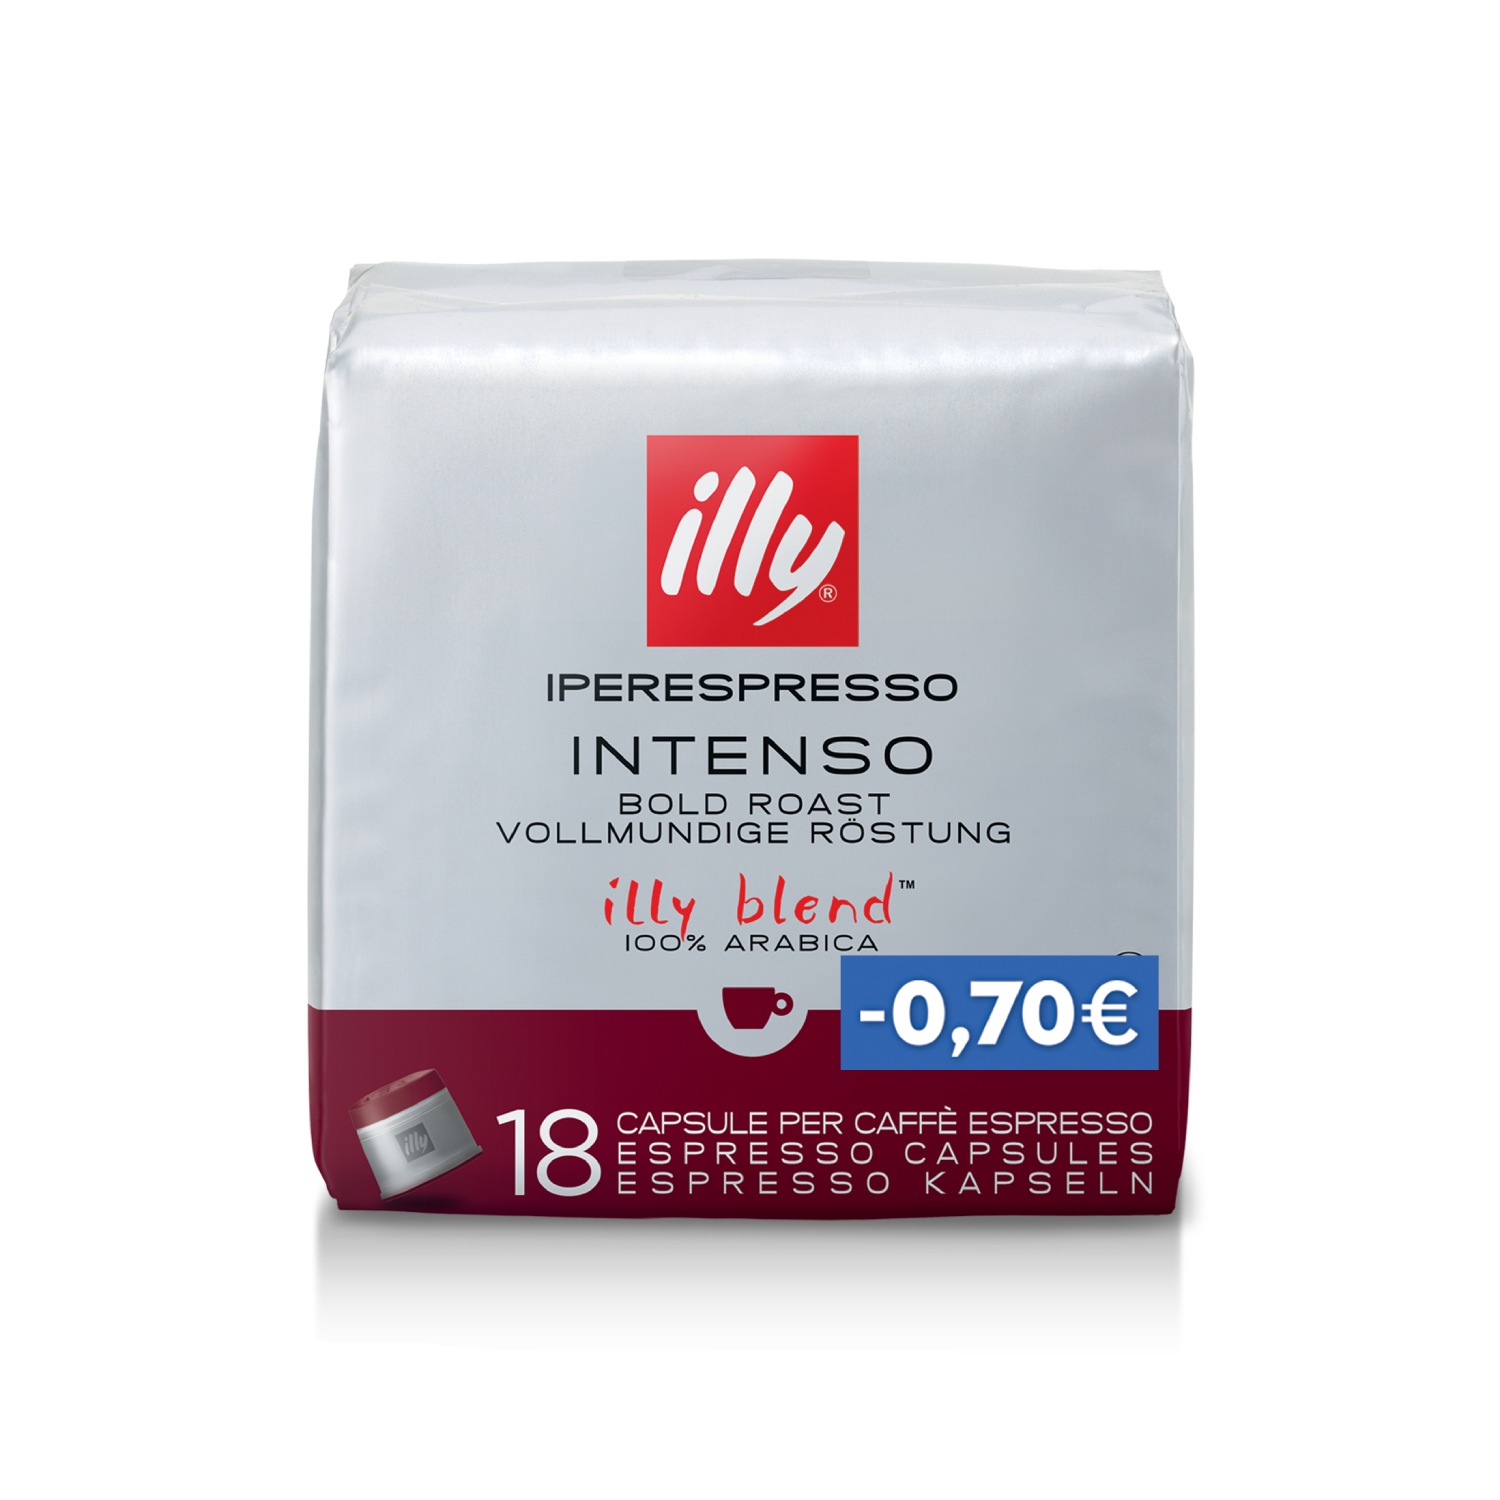 Κάψουλες Iperespresso INTENSO - 18 κάψουλες (-0,70€), Χαρμάνια, 01-04-2201